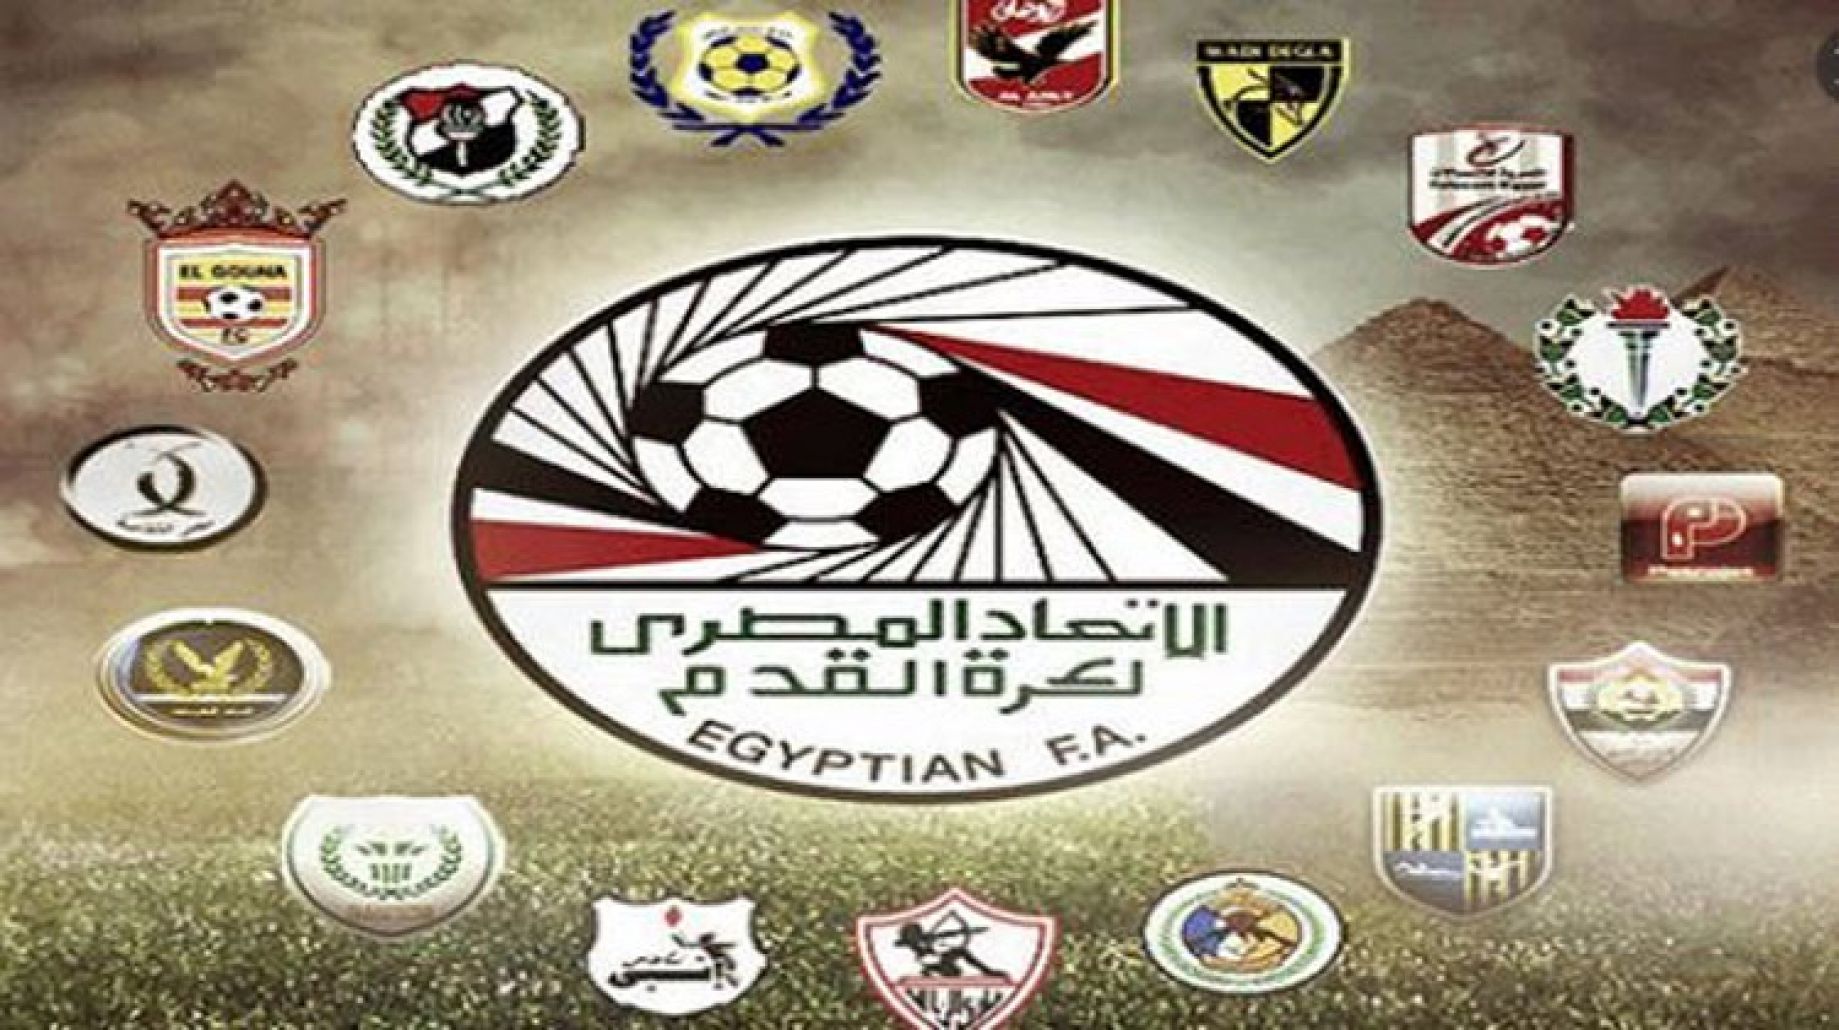 جدول الدوري المصري ومنافسة تستمر بالاشتعال بين الفرق المتصدرة